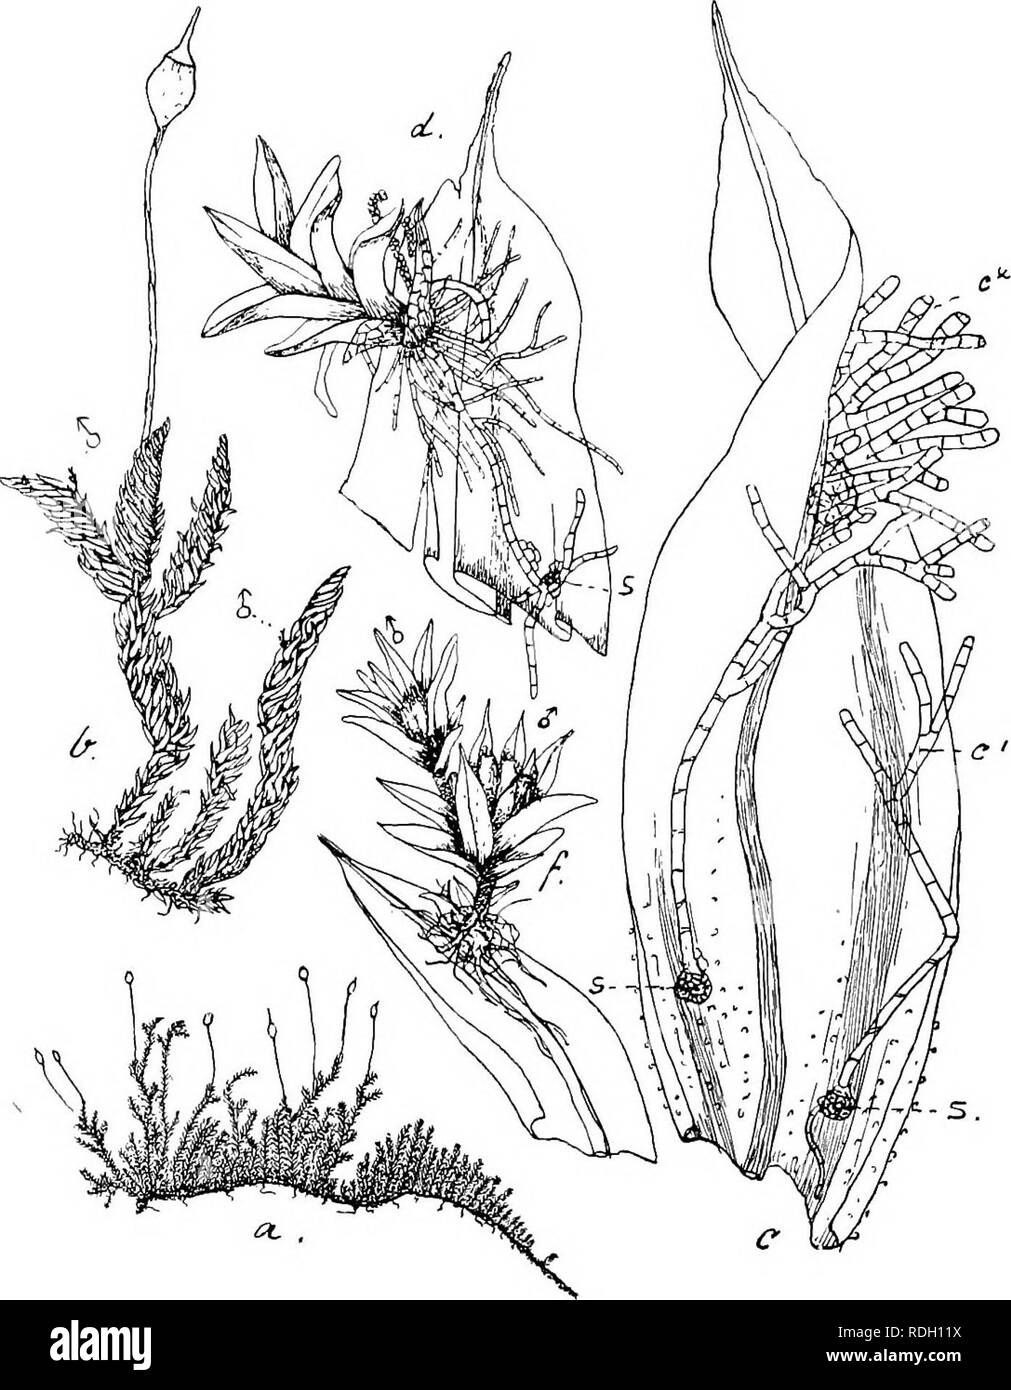 . Flore de Buitenzorg. Botany. 425 Schlotheimia teres Dz. et Mb., in Add. so. tiafc., 1844, II, p. 314. Exsiccata: M. Fleischer, Muse. Archip. Ind., N°. 132 (1900). Zweihausig (phyllodiScisch). d&quot; Pflanzen beblattert, winzig Kk. 78.. Macromitri Blumei Nees. u. Habitusbild (nat. Grosse); i. Desgl. mit d&quot; Bluten i. I,. Stengelblatt mit s., keimenden Spoi'en, c'. und c'., Fadenprotonema, aus dcm sich die (/ Planze entwickelt 12.. d. Jange rf&quot; Pflanze auf del- Blattspitze sicli entwiokelnd ijS..: s. Spore. /. Aasgebildete' (/ Zwergpflanze mit Anthendien -2i. klein, ohne Stengelchen, Stock Photo